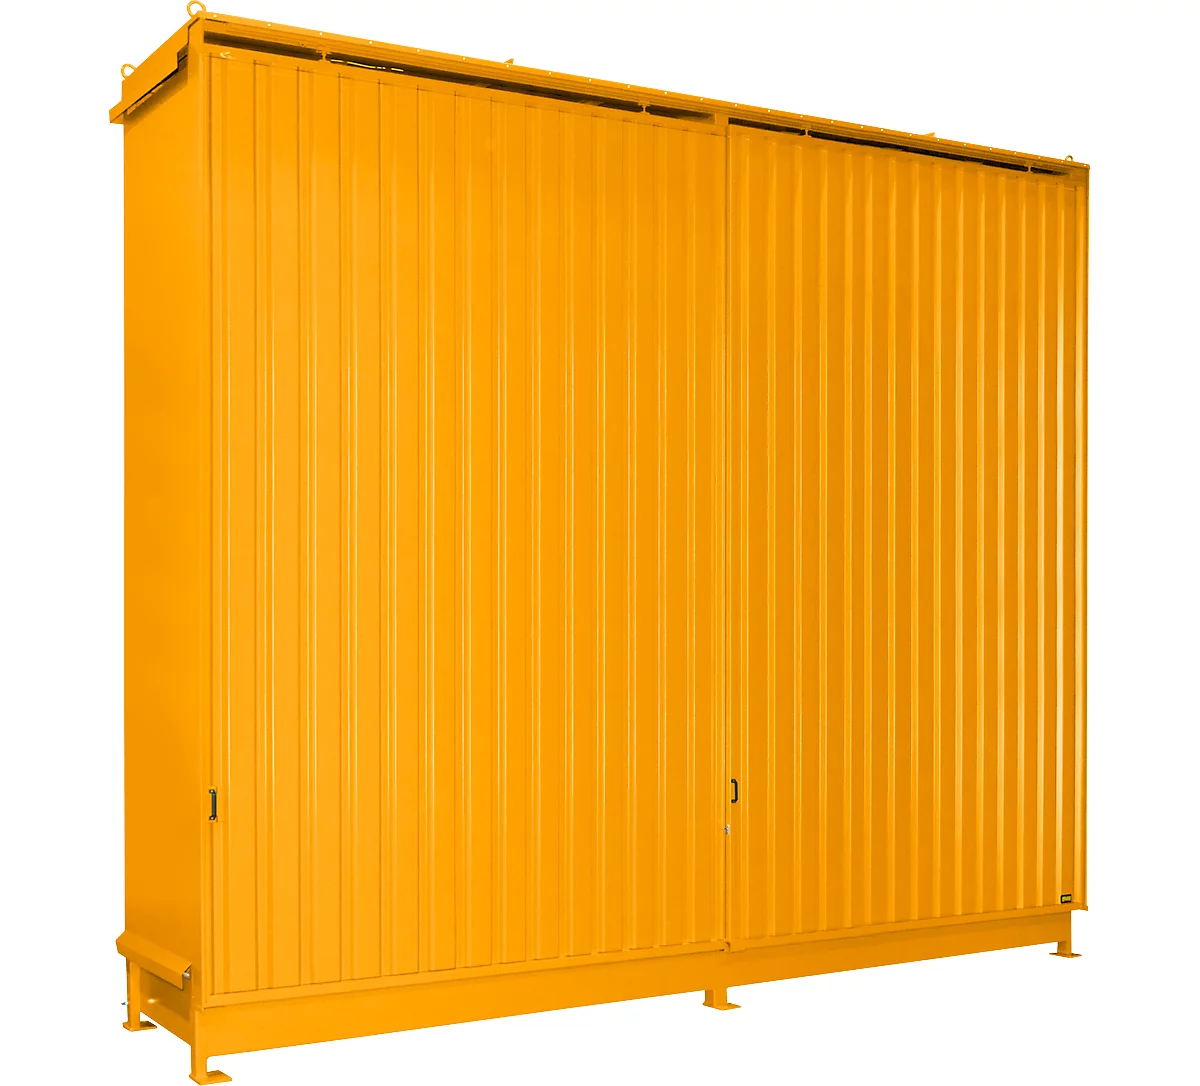 Contenedor Bauer tipo CEN 59-3 IBC, 3 niveles de estantes, puerta corredera, 2000 l, ancho 6540 x fondo 1600 x alto 5015 mm, amarillo-naranja RAL 2000